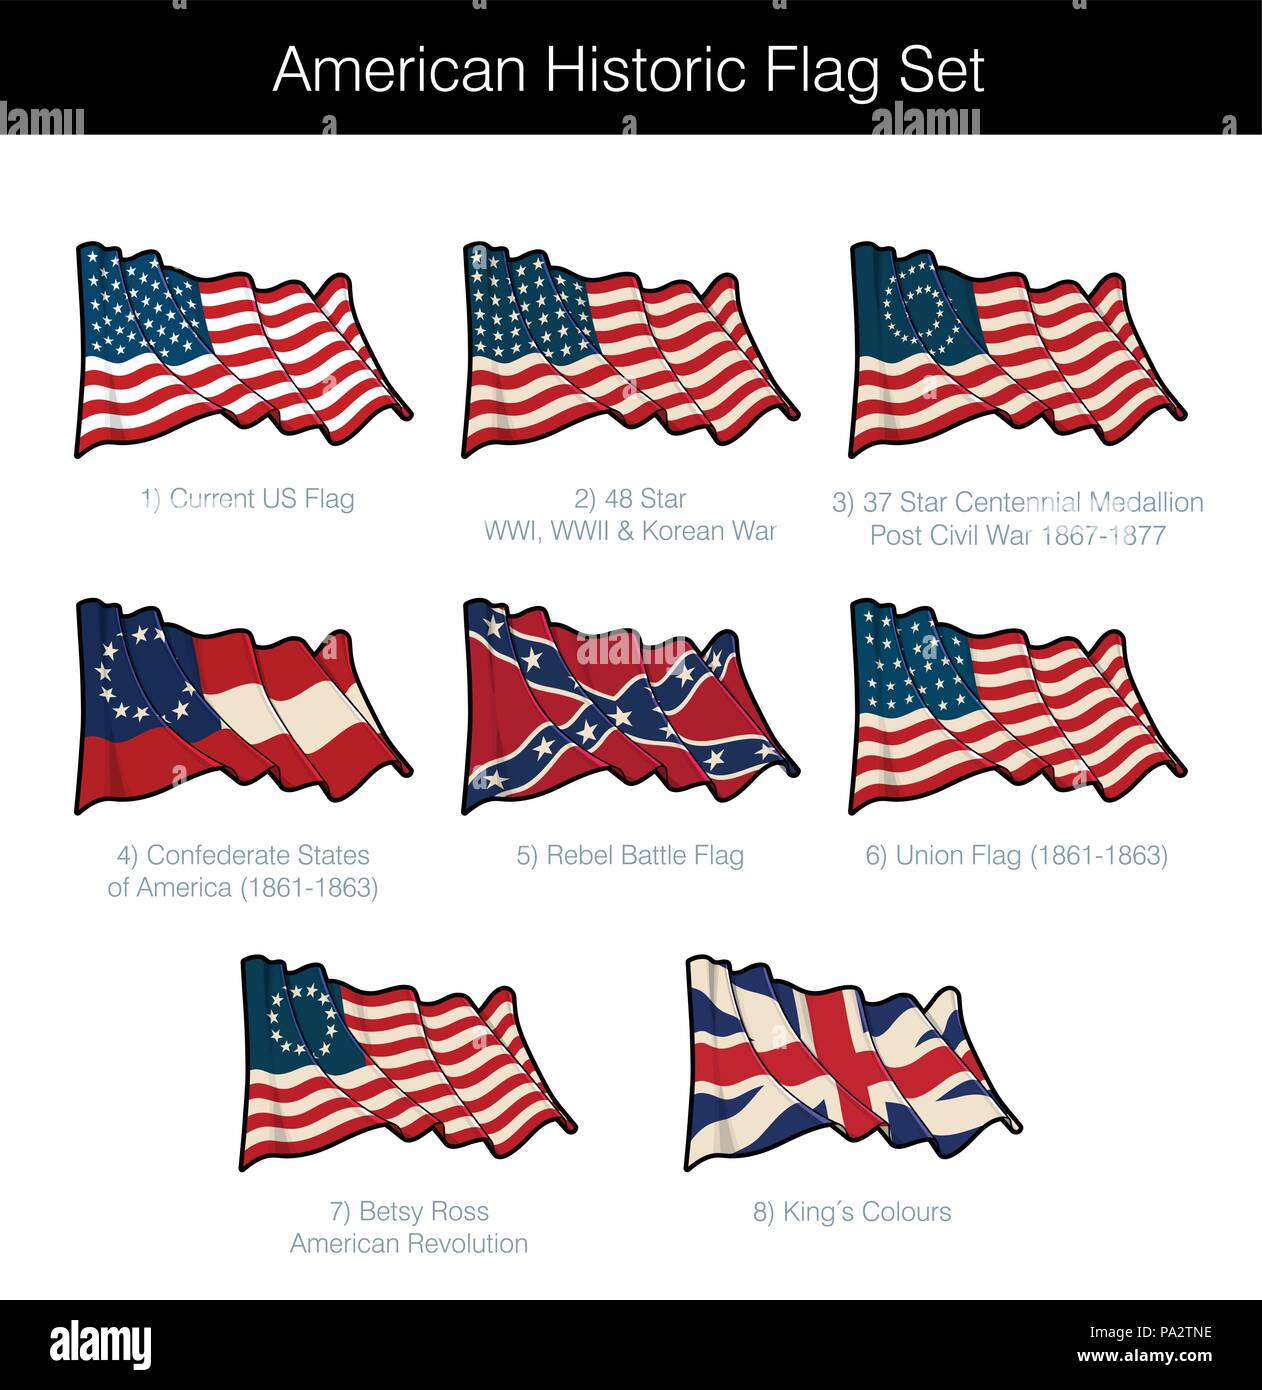 Amerikanische historische Wehende Flagge gesetzt. Das Set enthält Flags von den Revolutionären, bürgerlichen, koreanischen und der beiden Weltkriege. Vector Icons alle Elemente ordentlich Stock Vektor